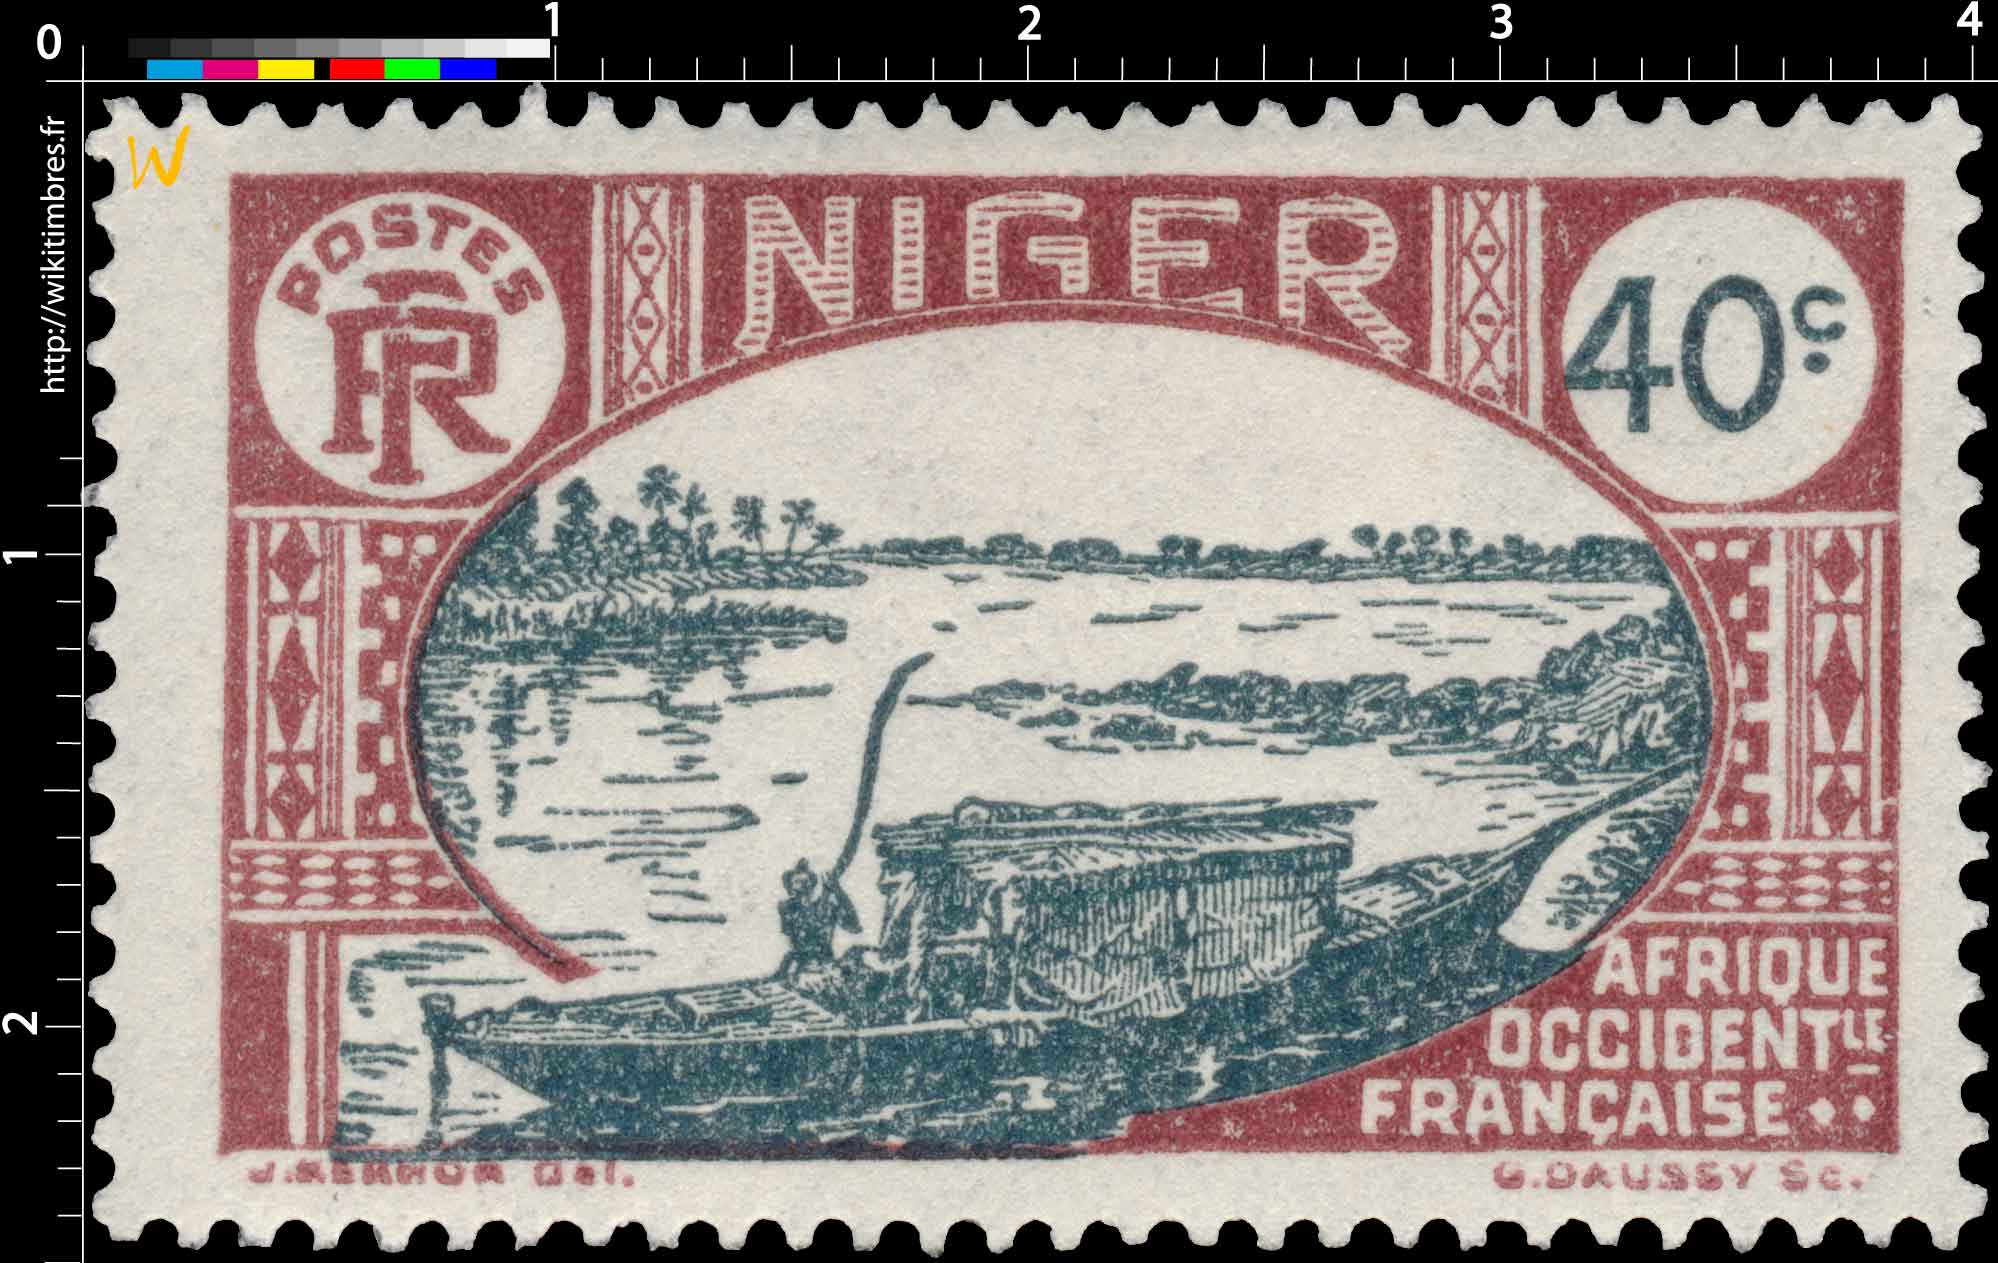 Niger - type ermbarcation indigène sur le Niger